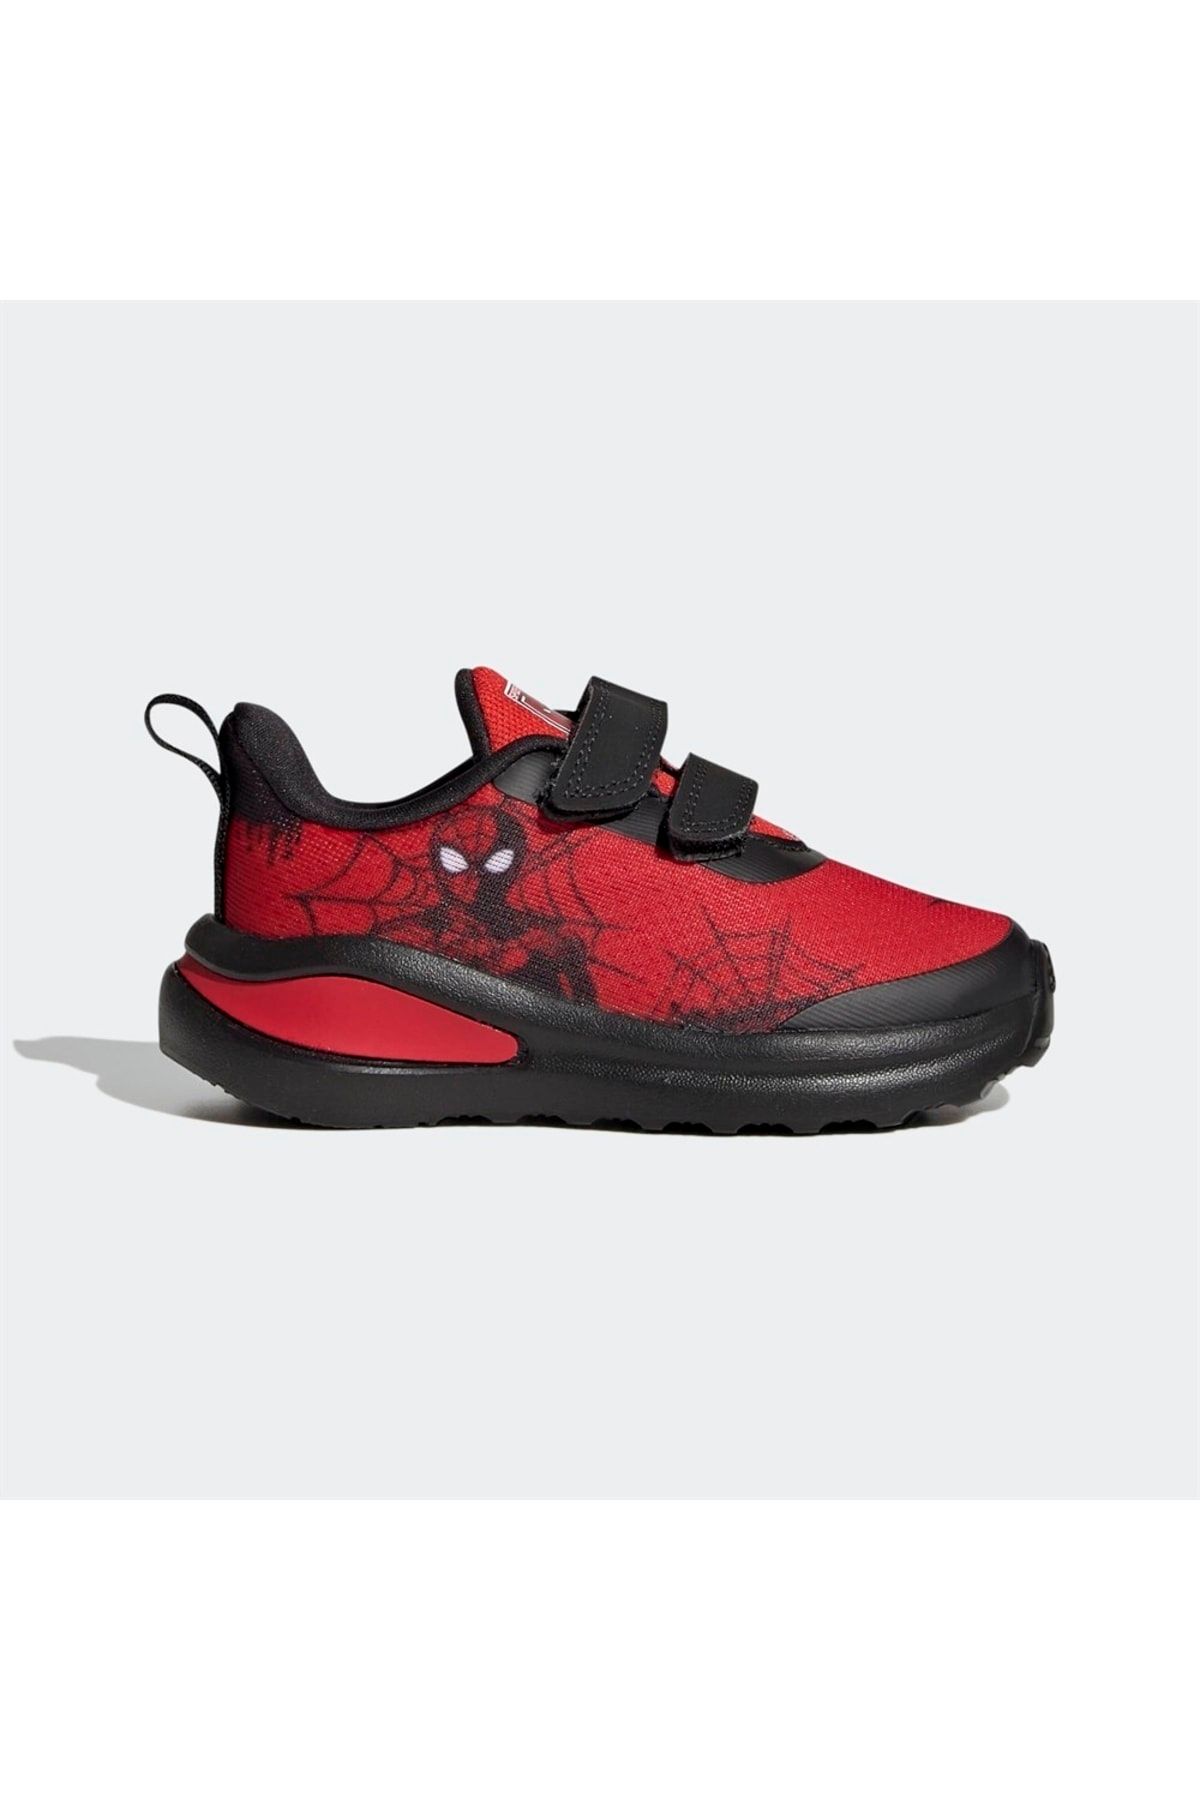 adidas Fortarun Spider-man Cf I Çocuk Günlük Spor Ayakkabı